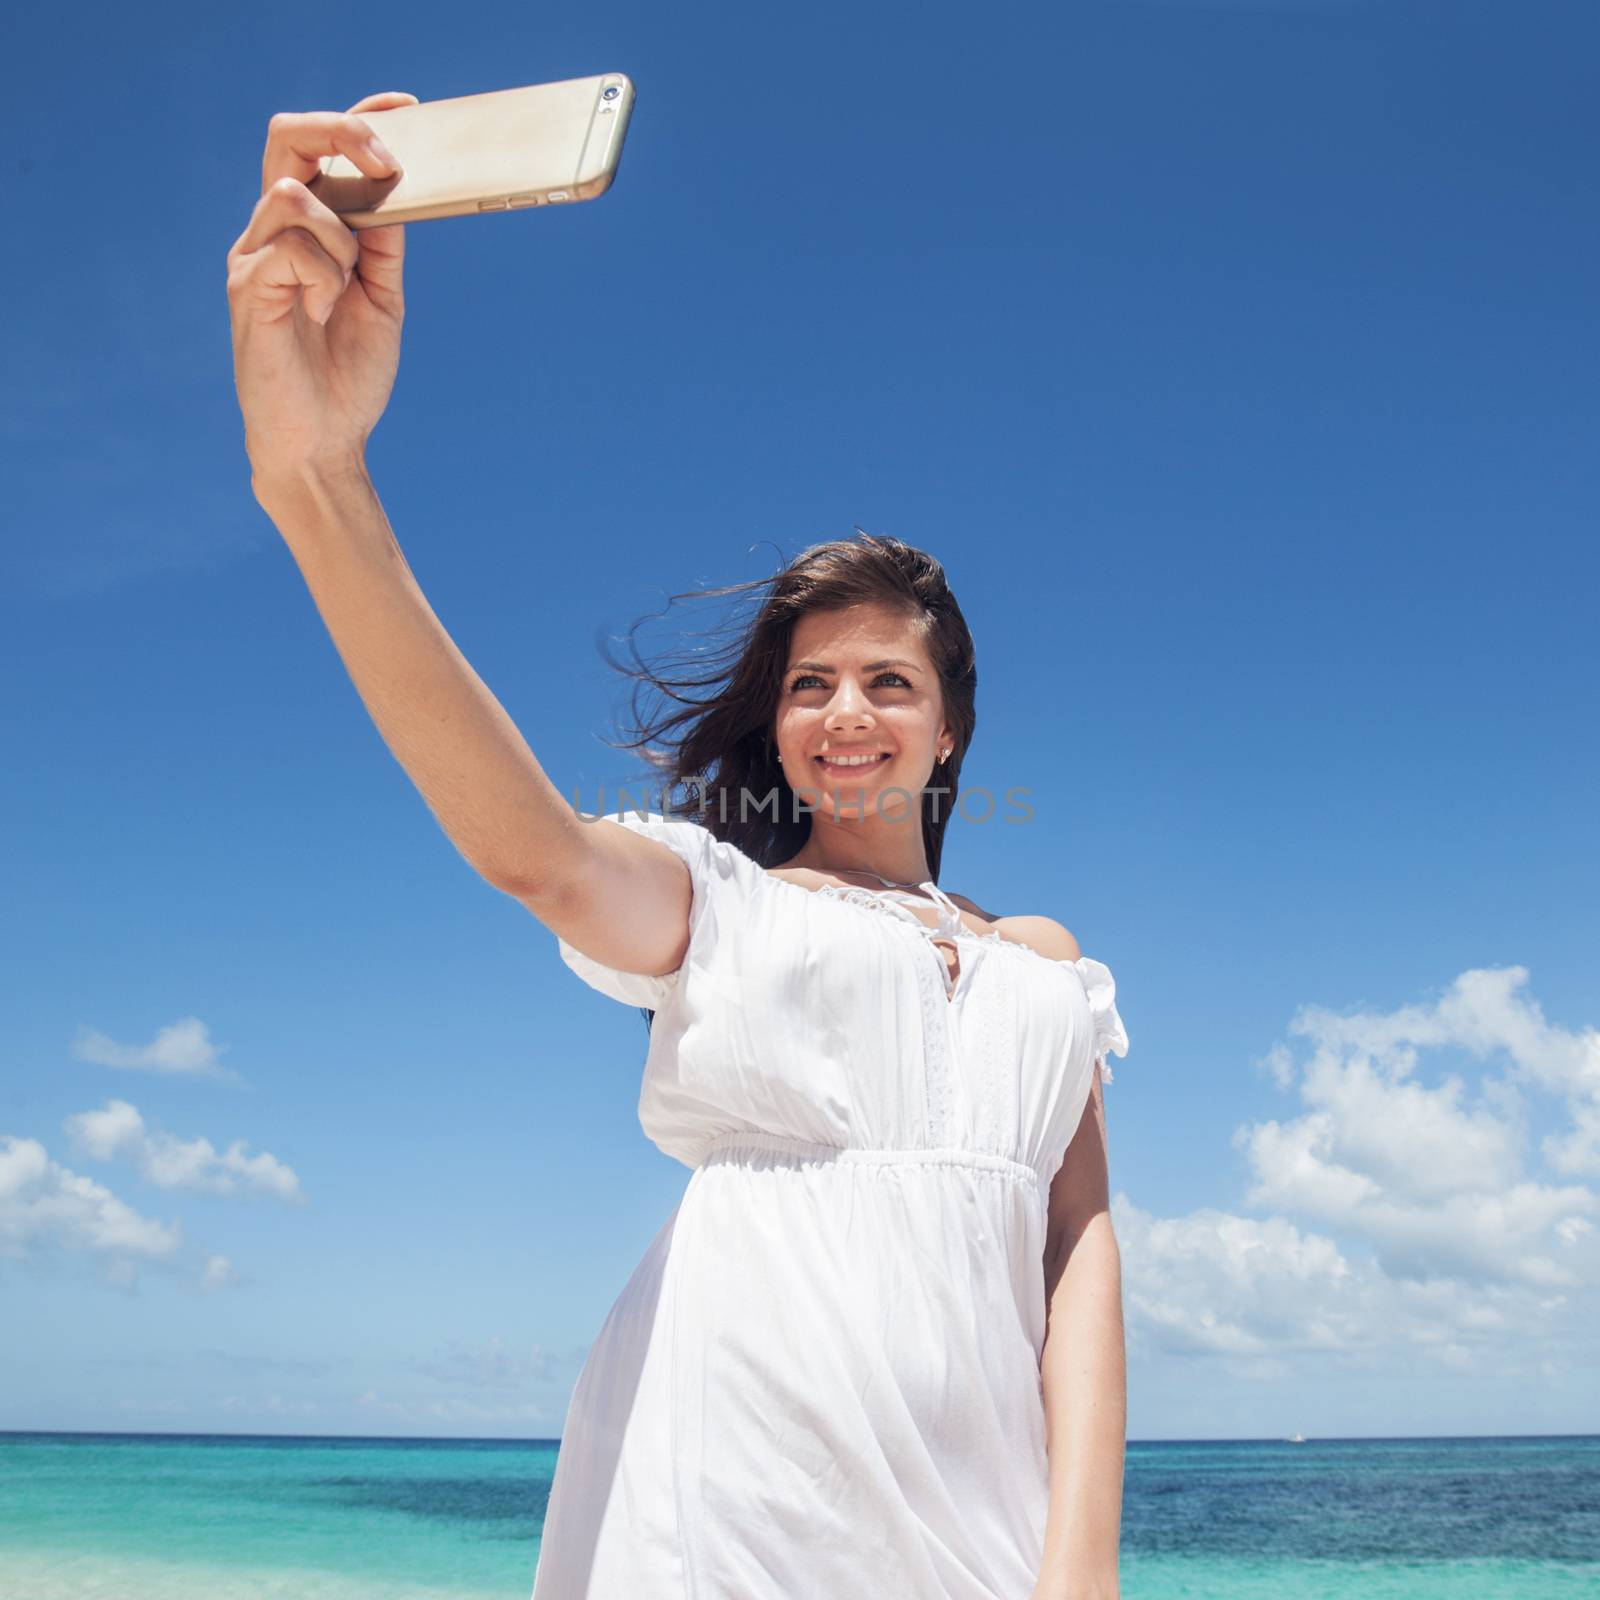 Woman taking selfie on beach by Yellowj